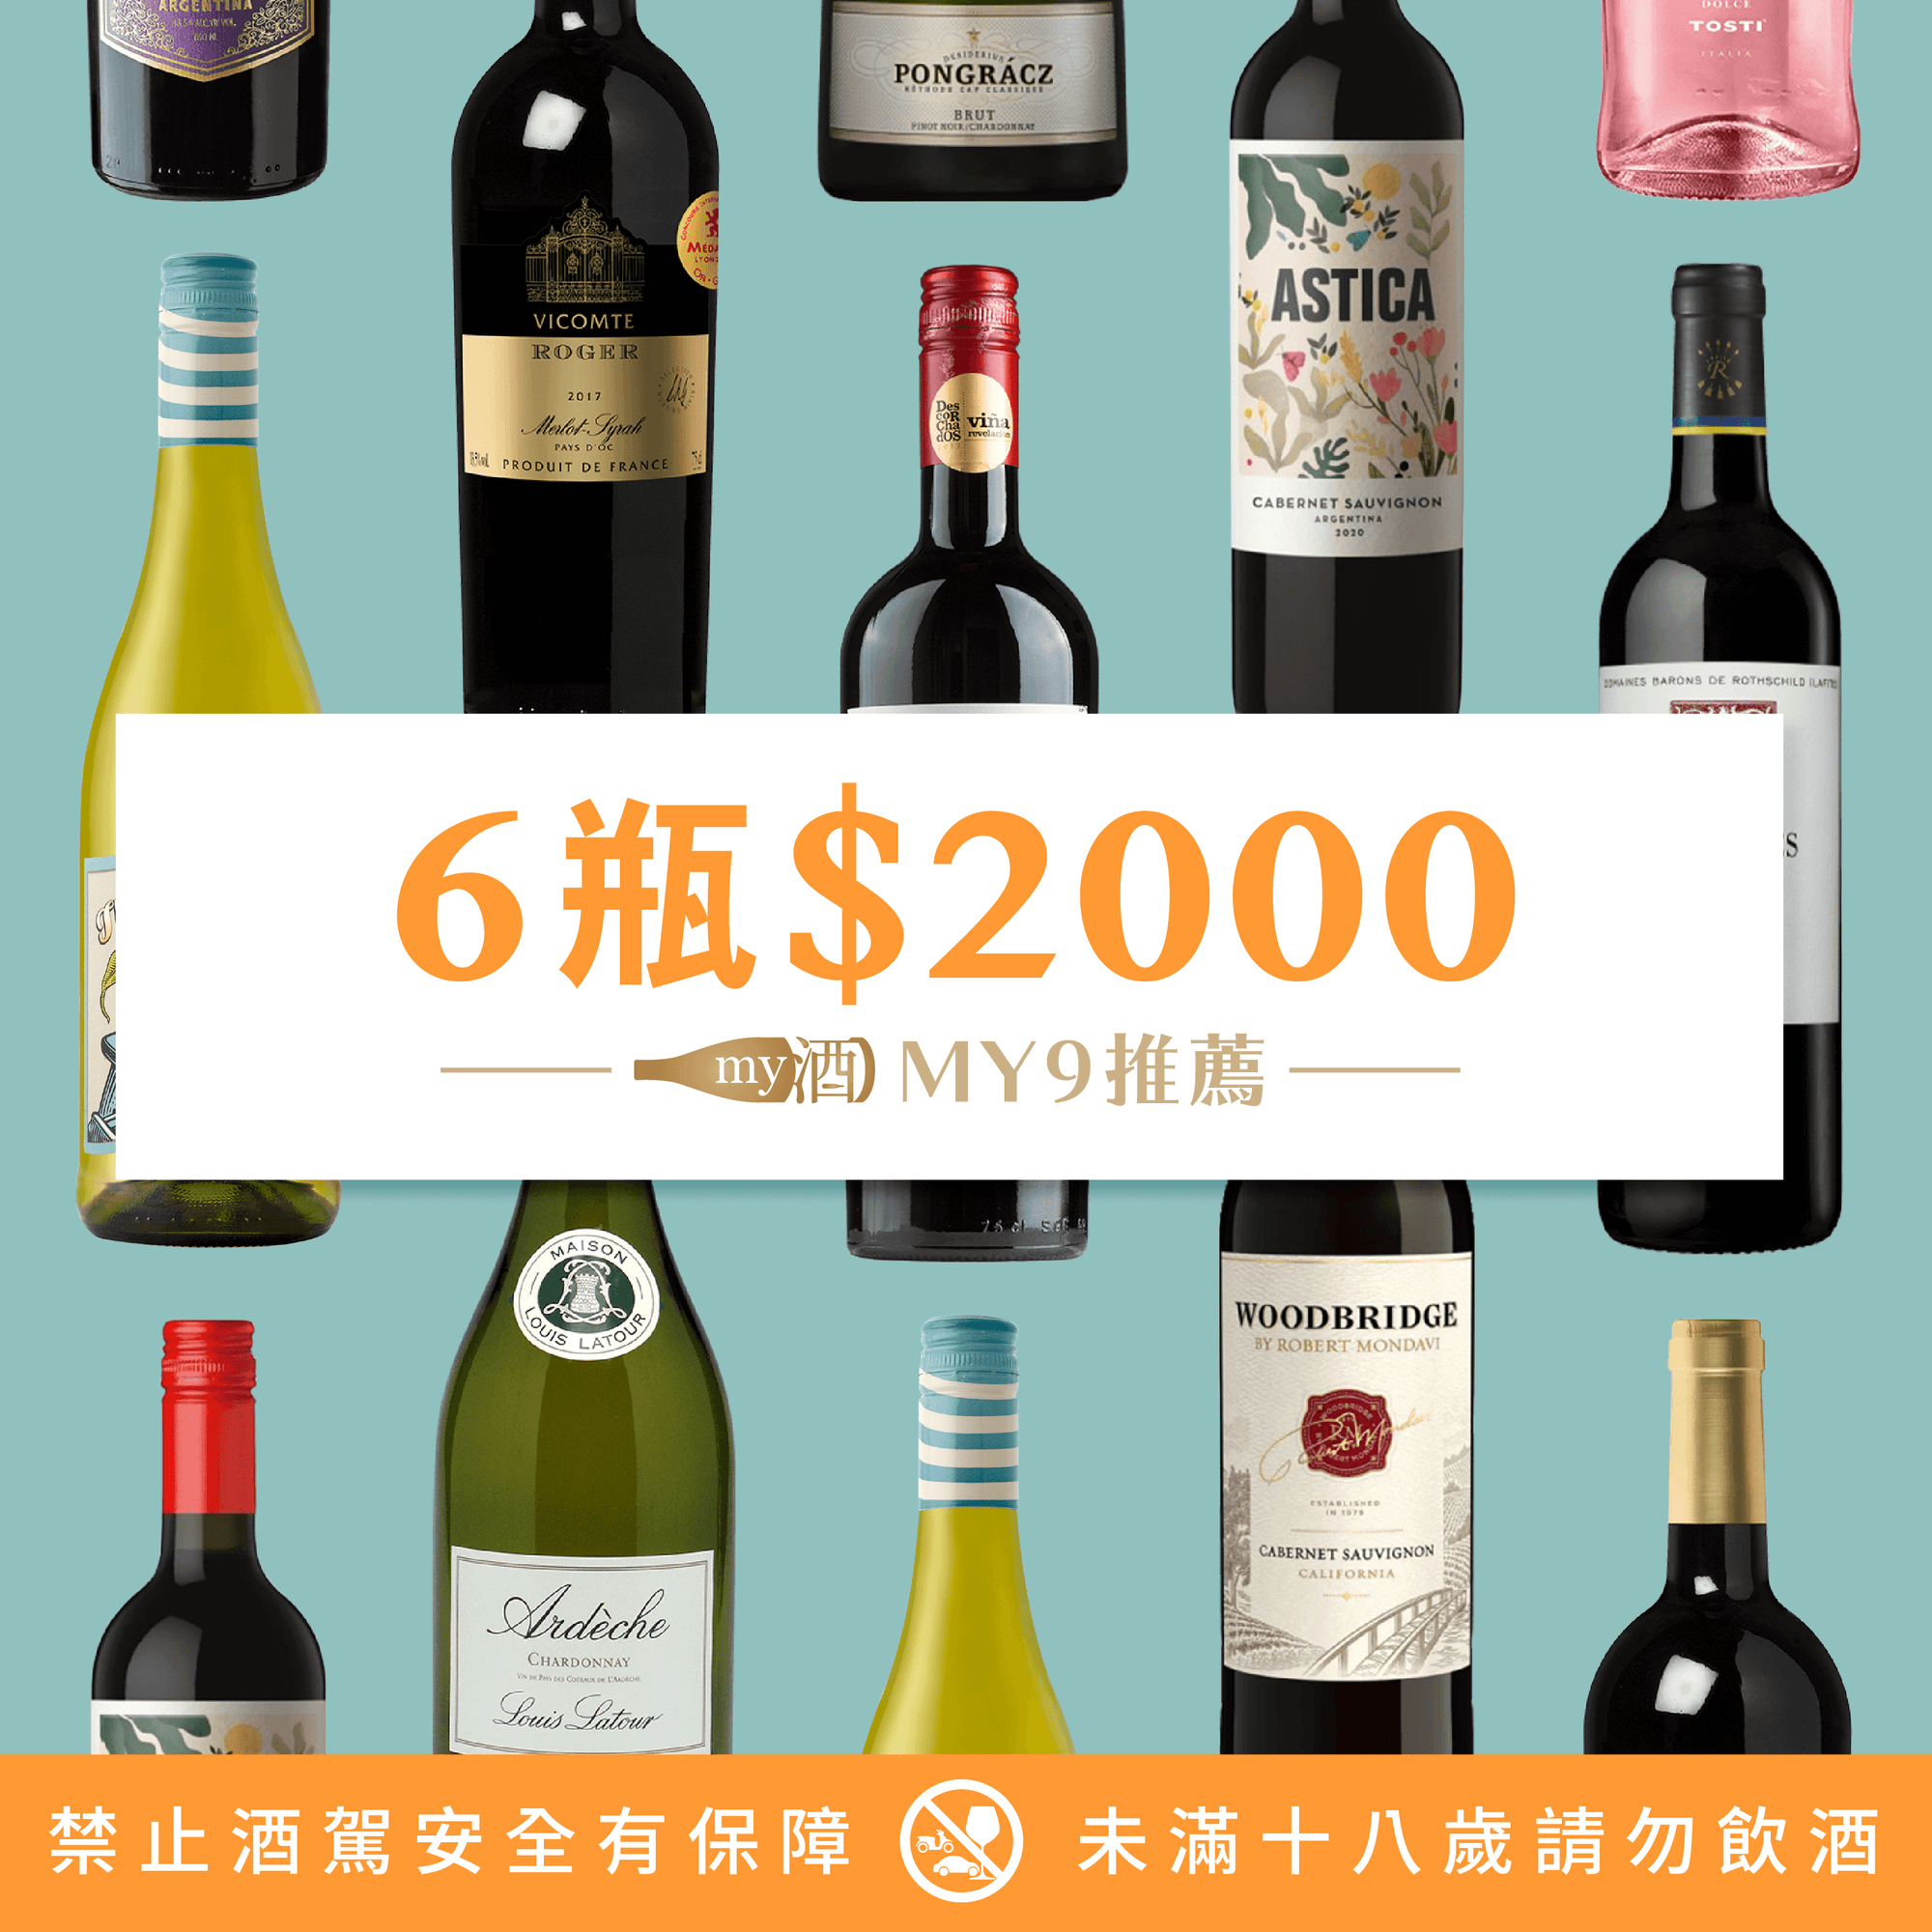 宅在家救台灣 ! 葡萄酒6瓶 $2000推薦！